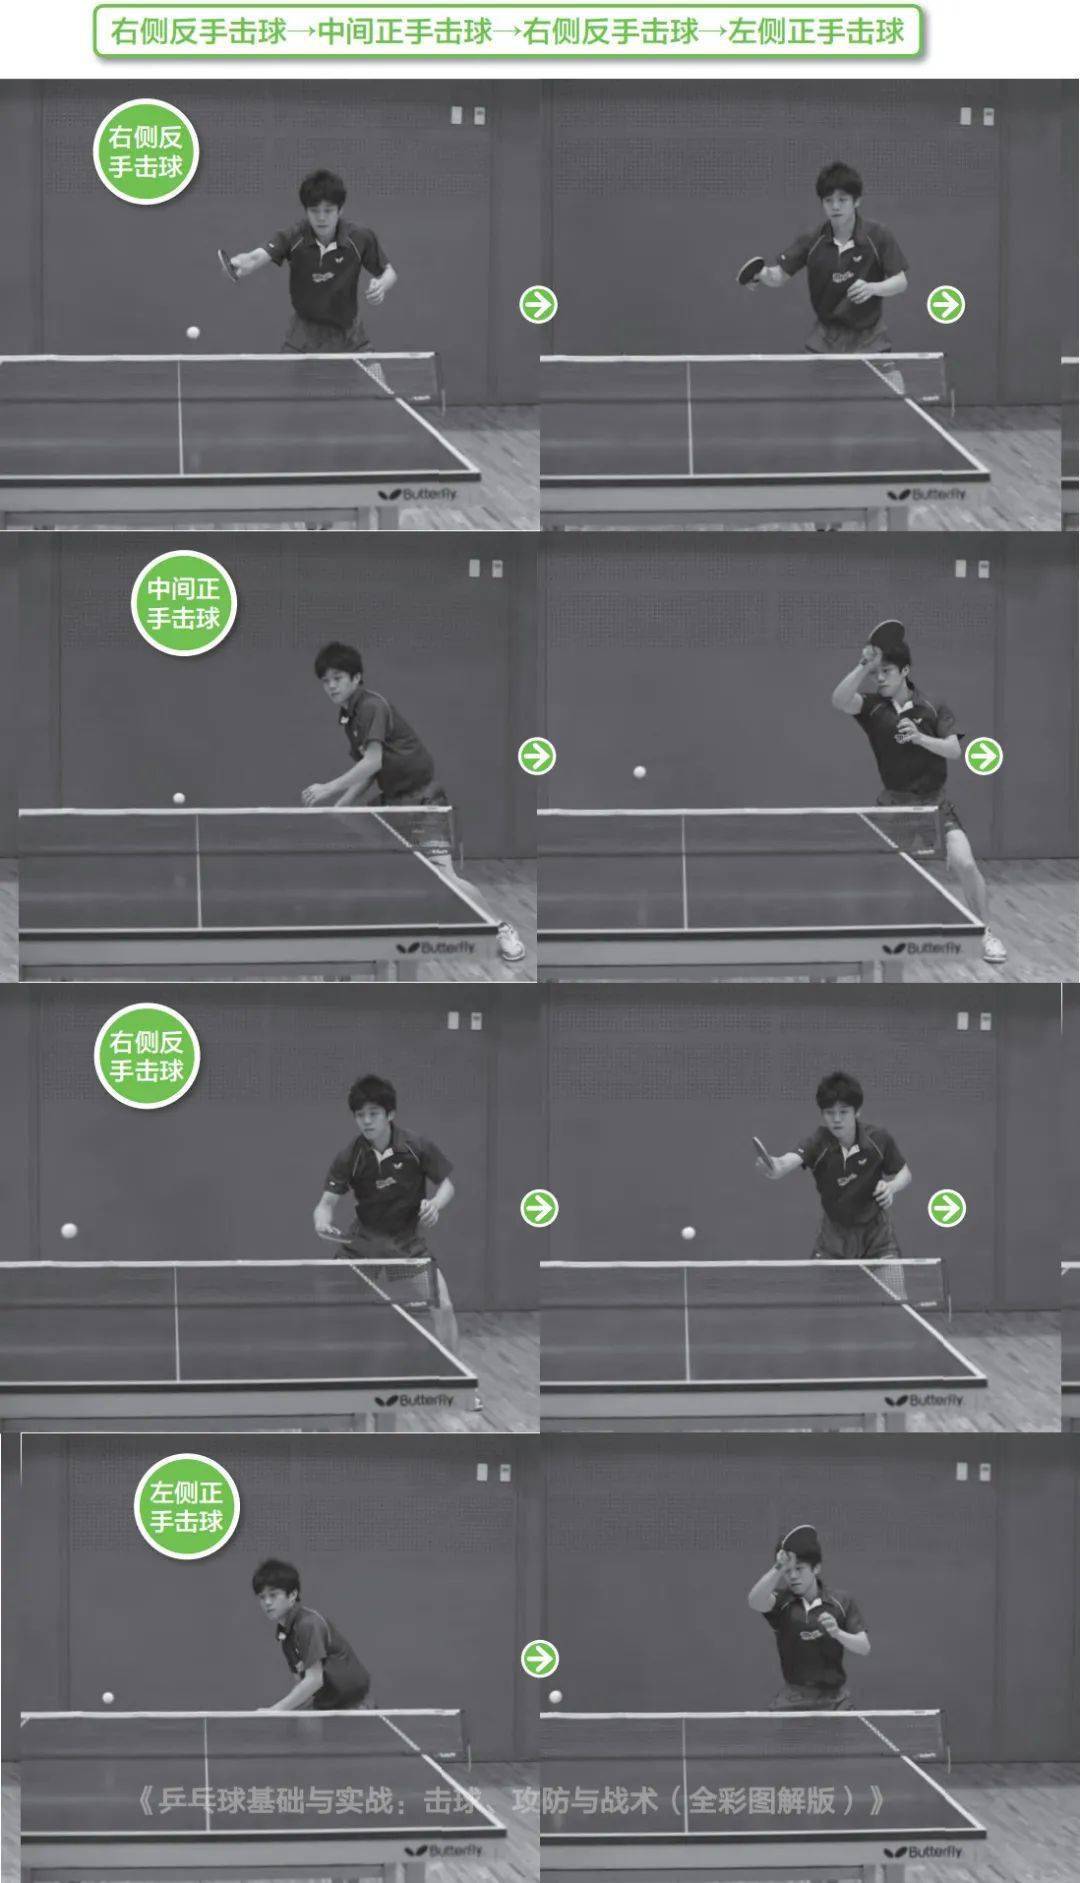 分享| 乒乓球步法练习图文讲解 8种体能训练动作!